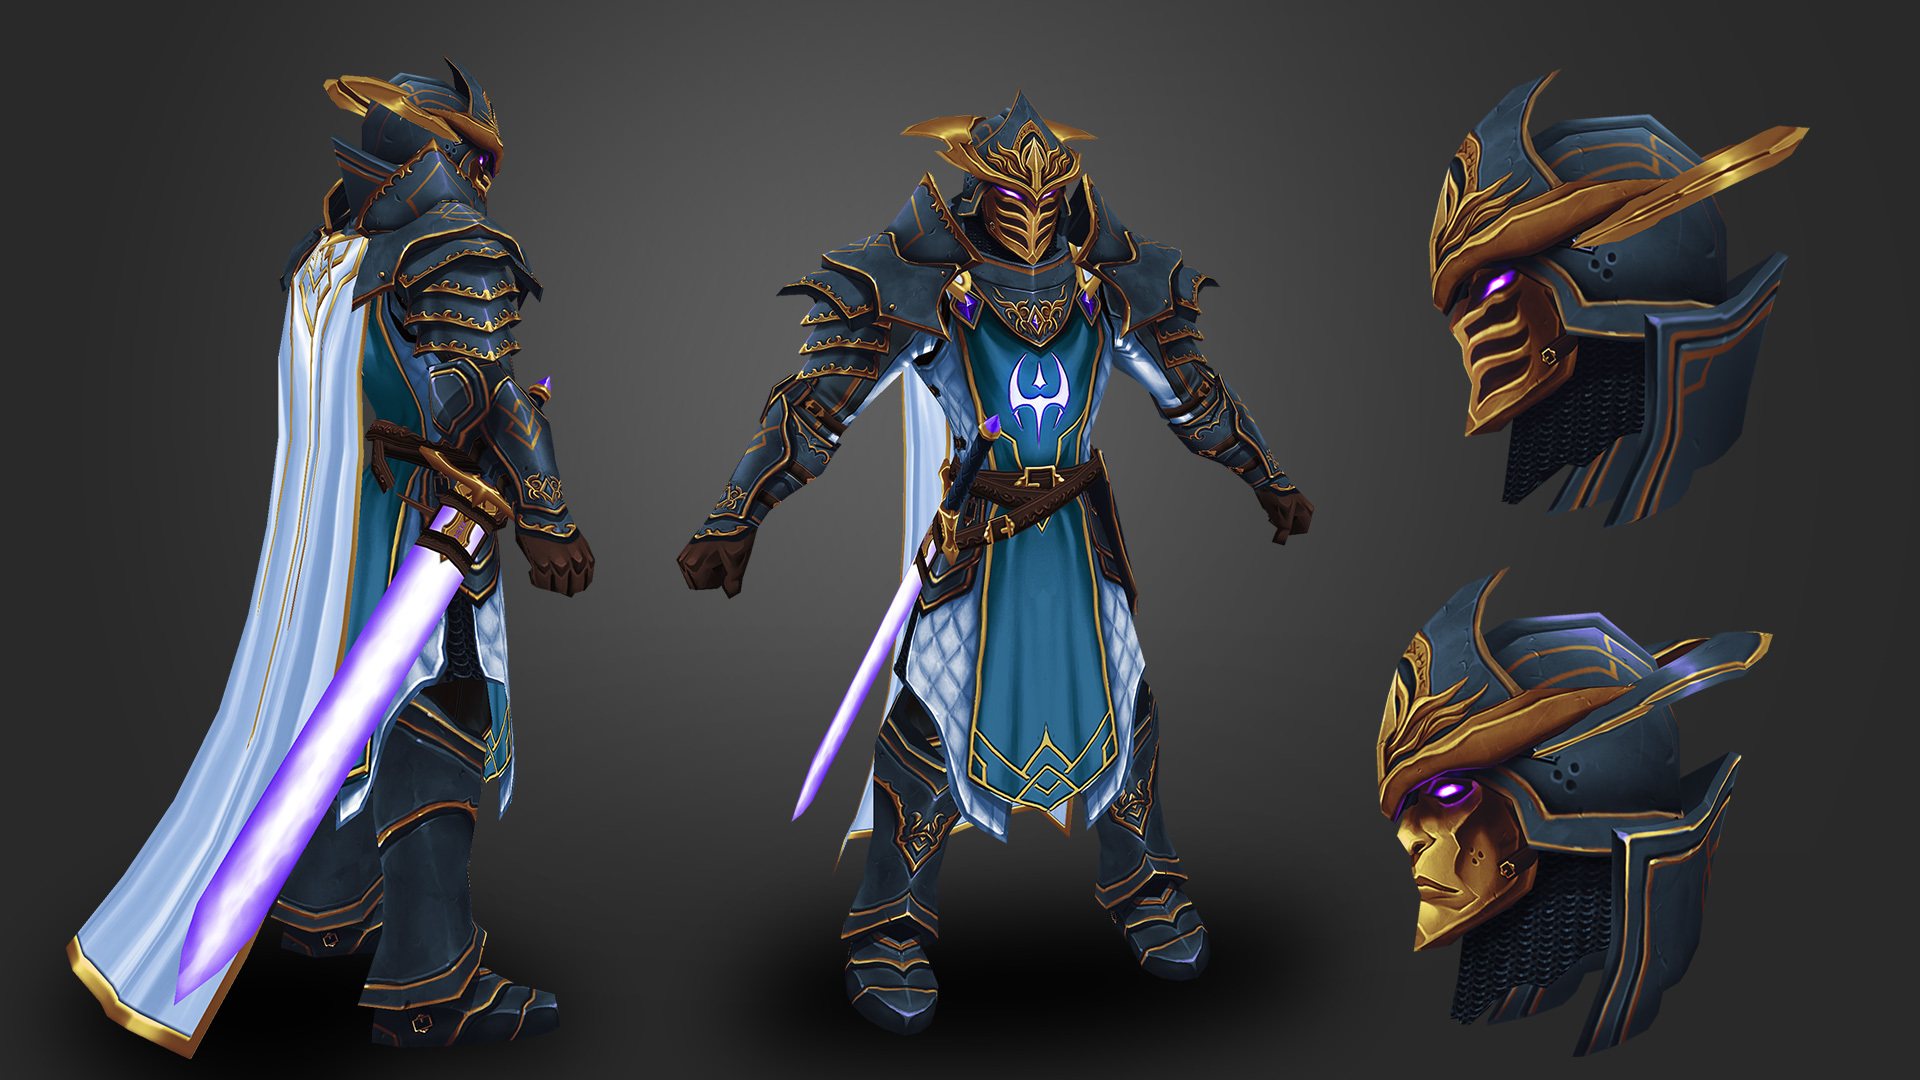 Here is a sneak peek of Dage's newest armor. 